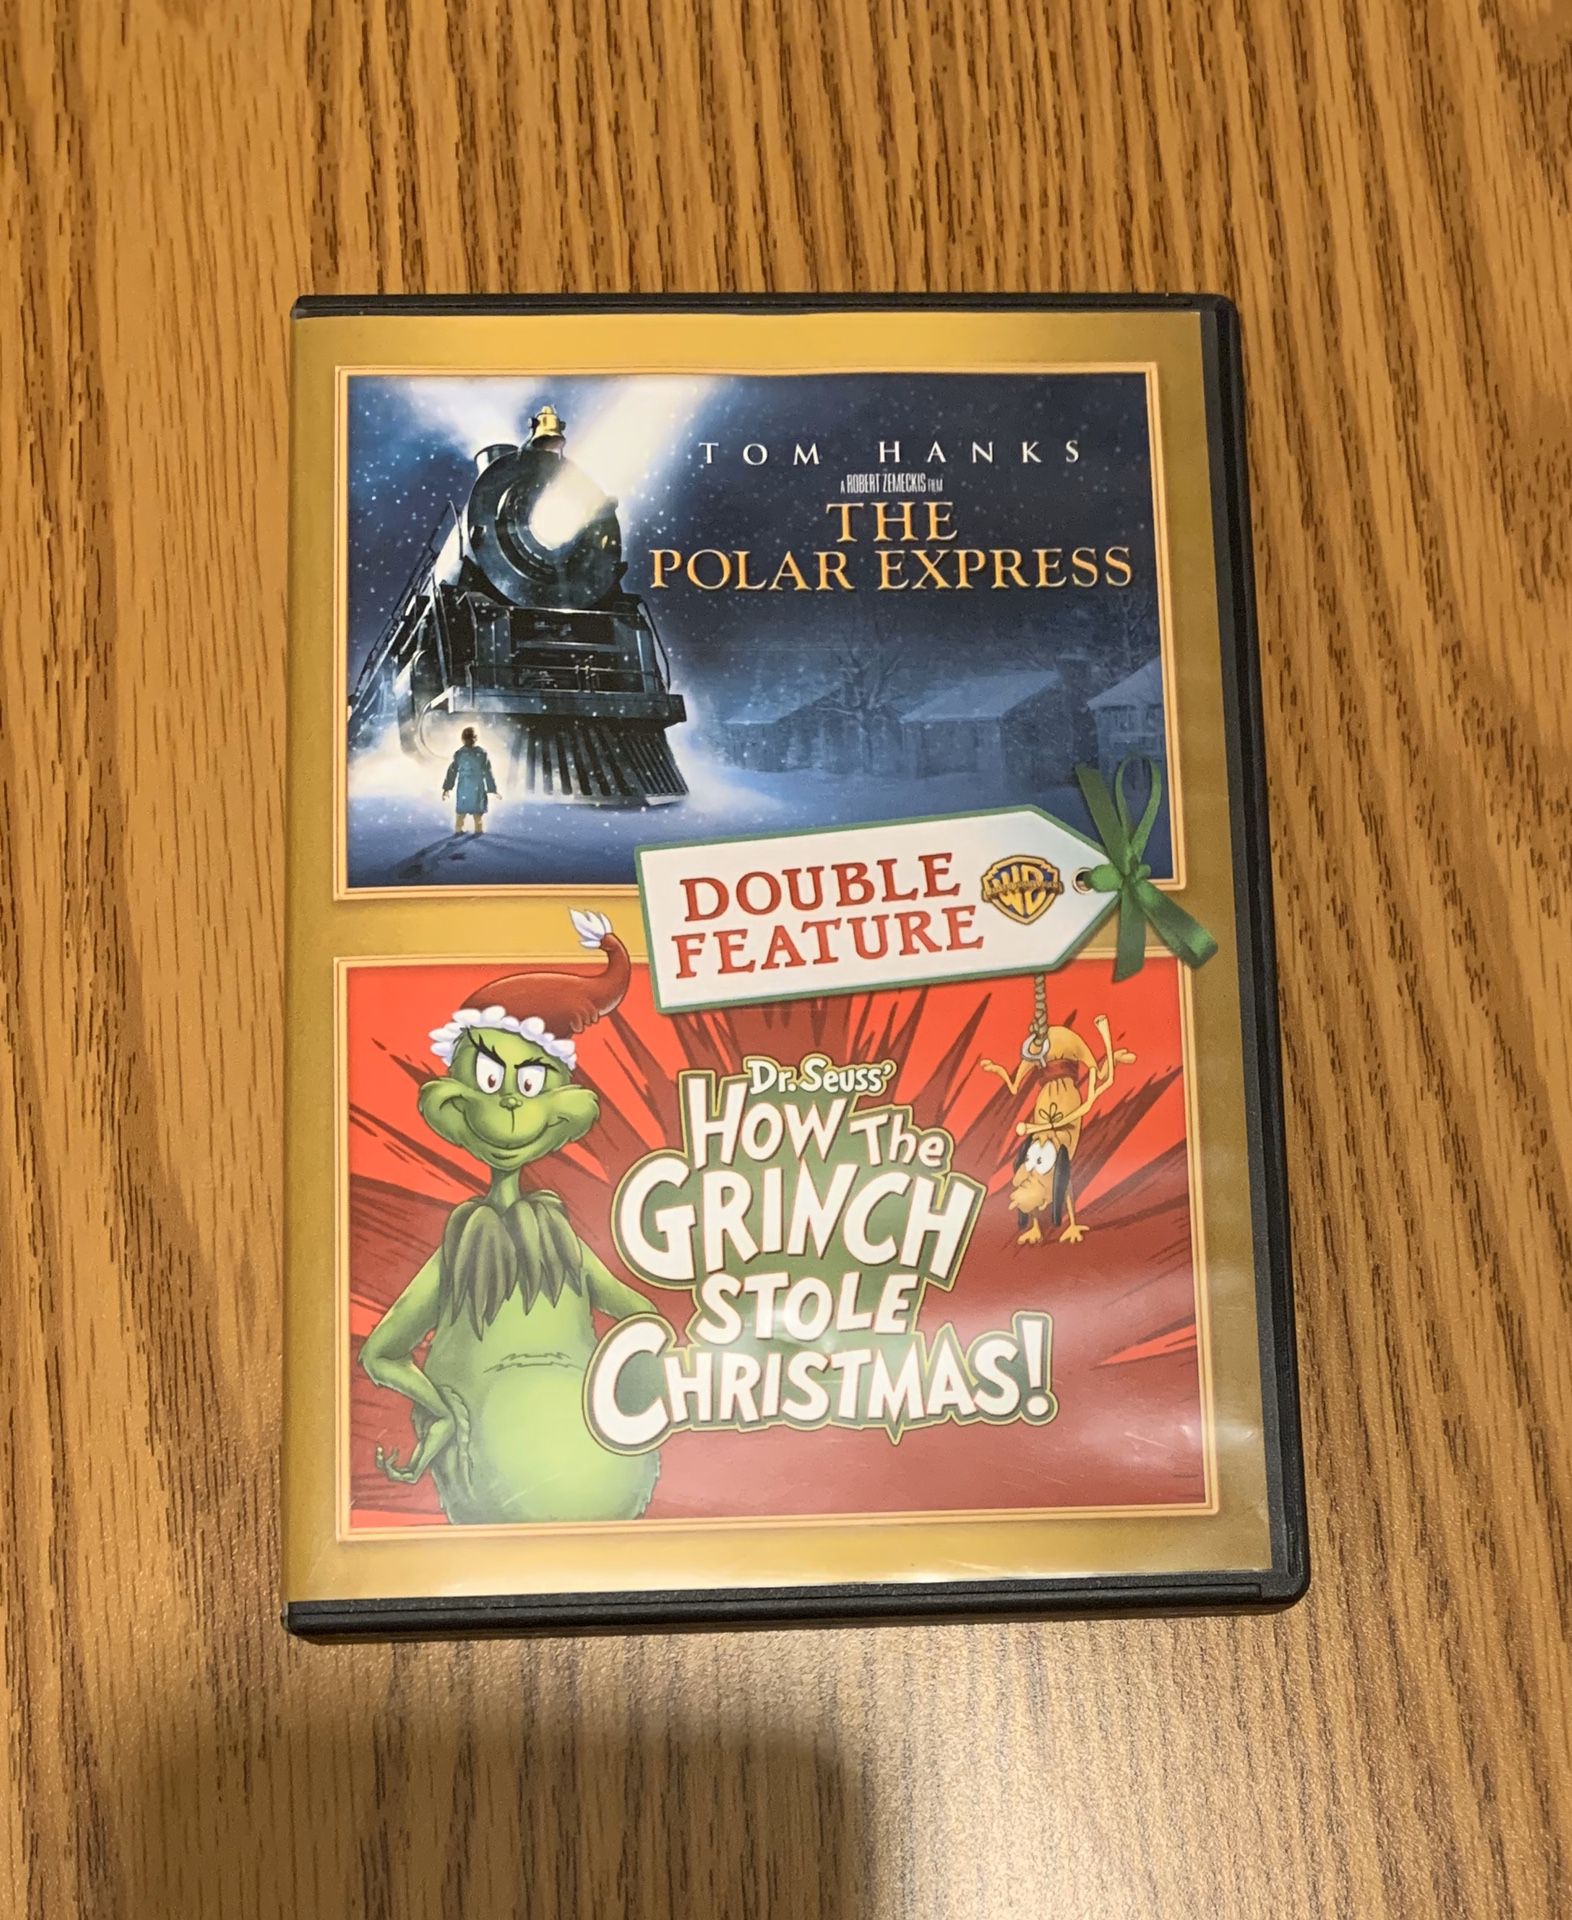 Christmas movies